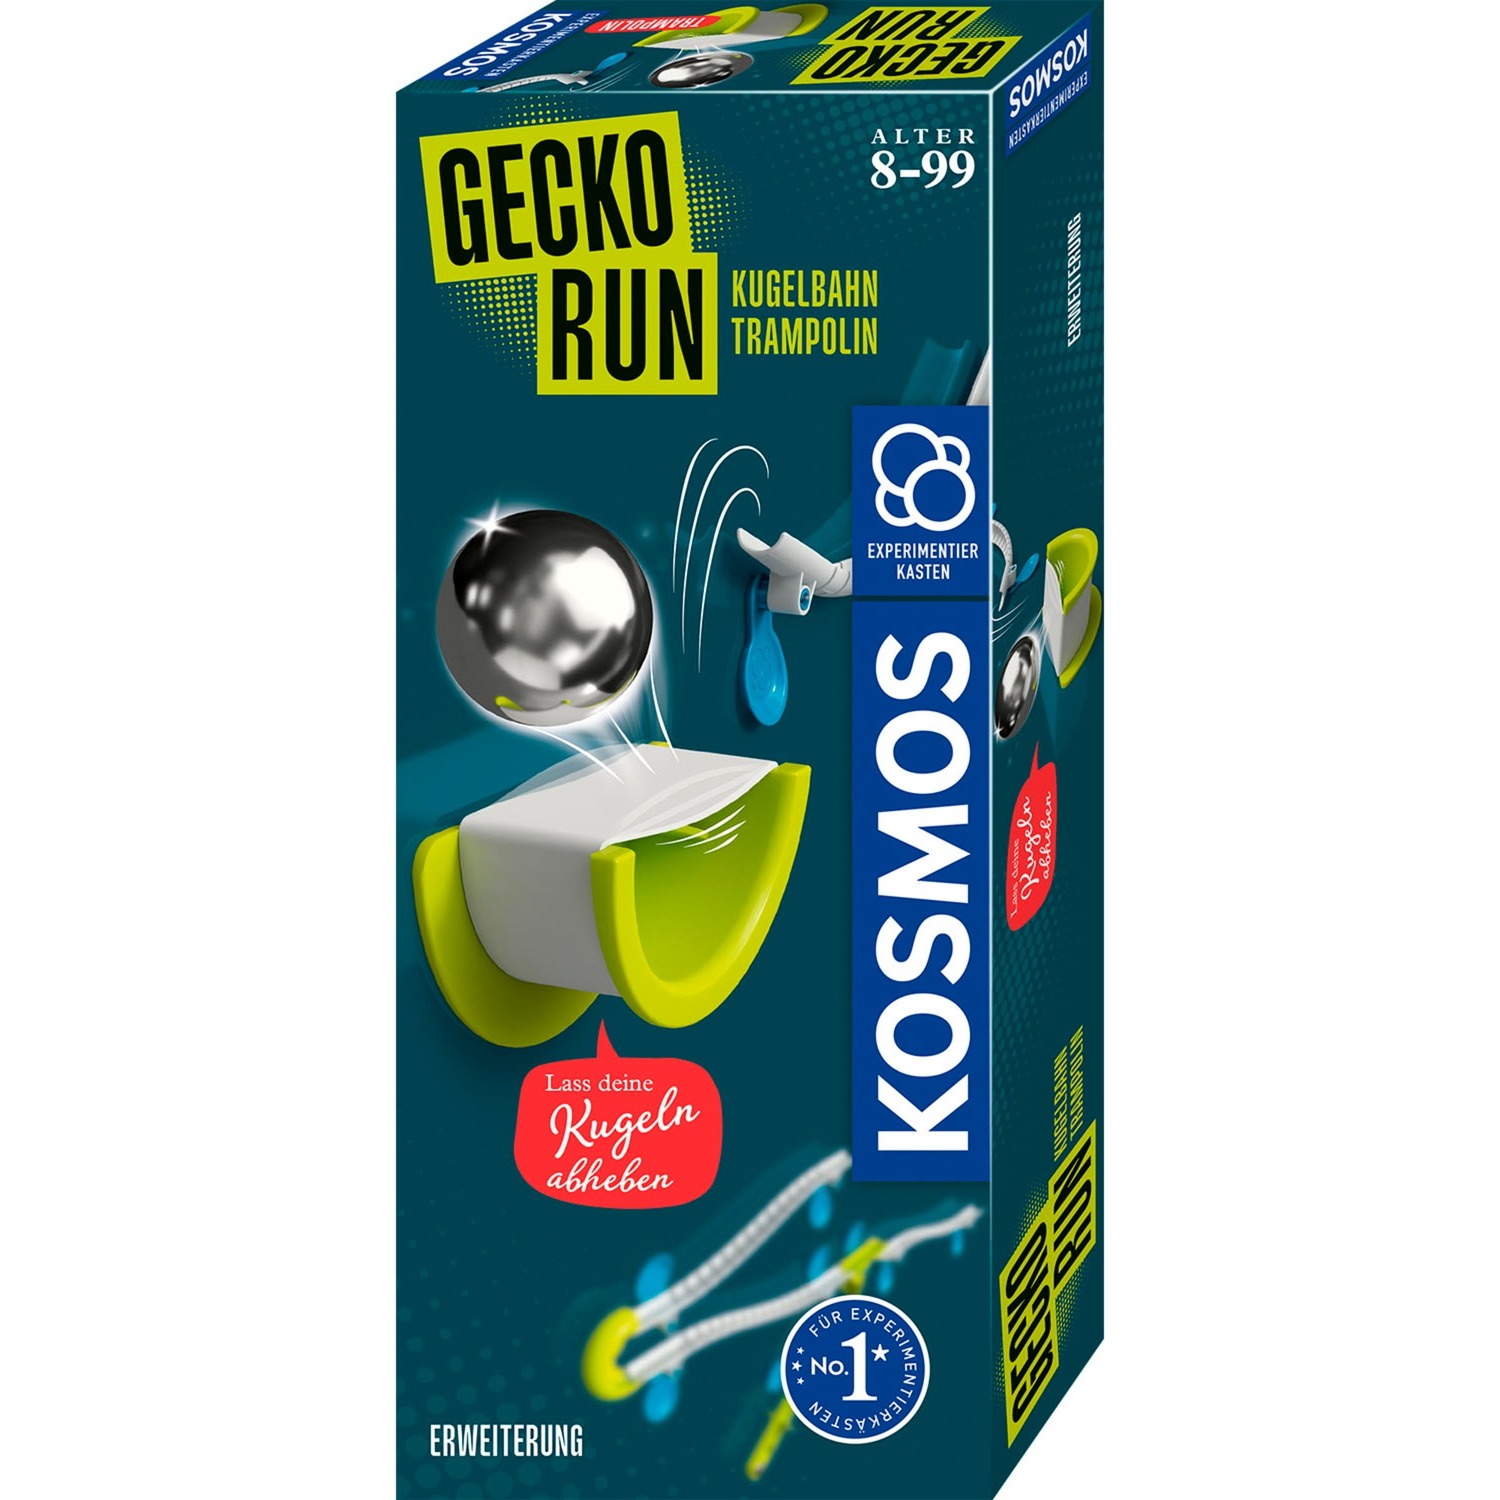 Gecko Run - Trampolin, Kugelbahn von Kosmos